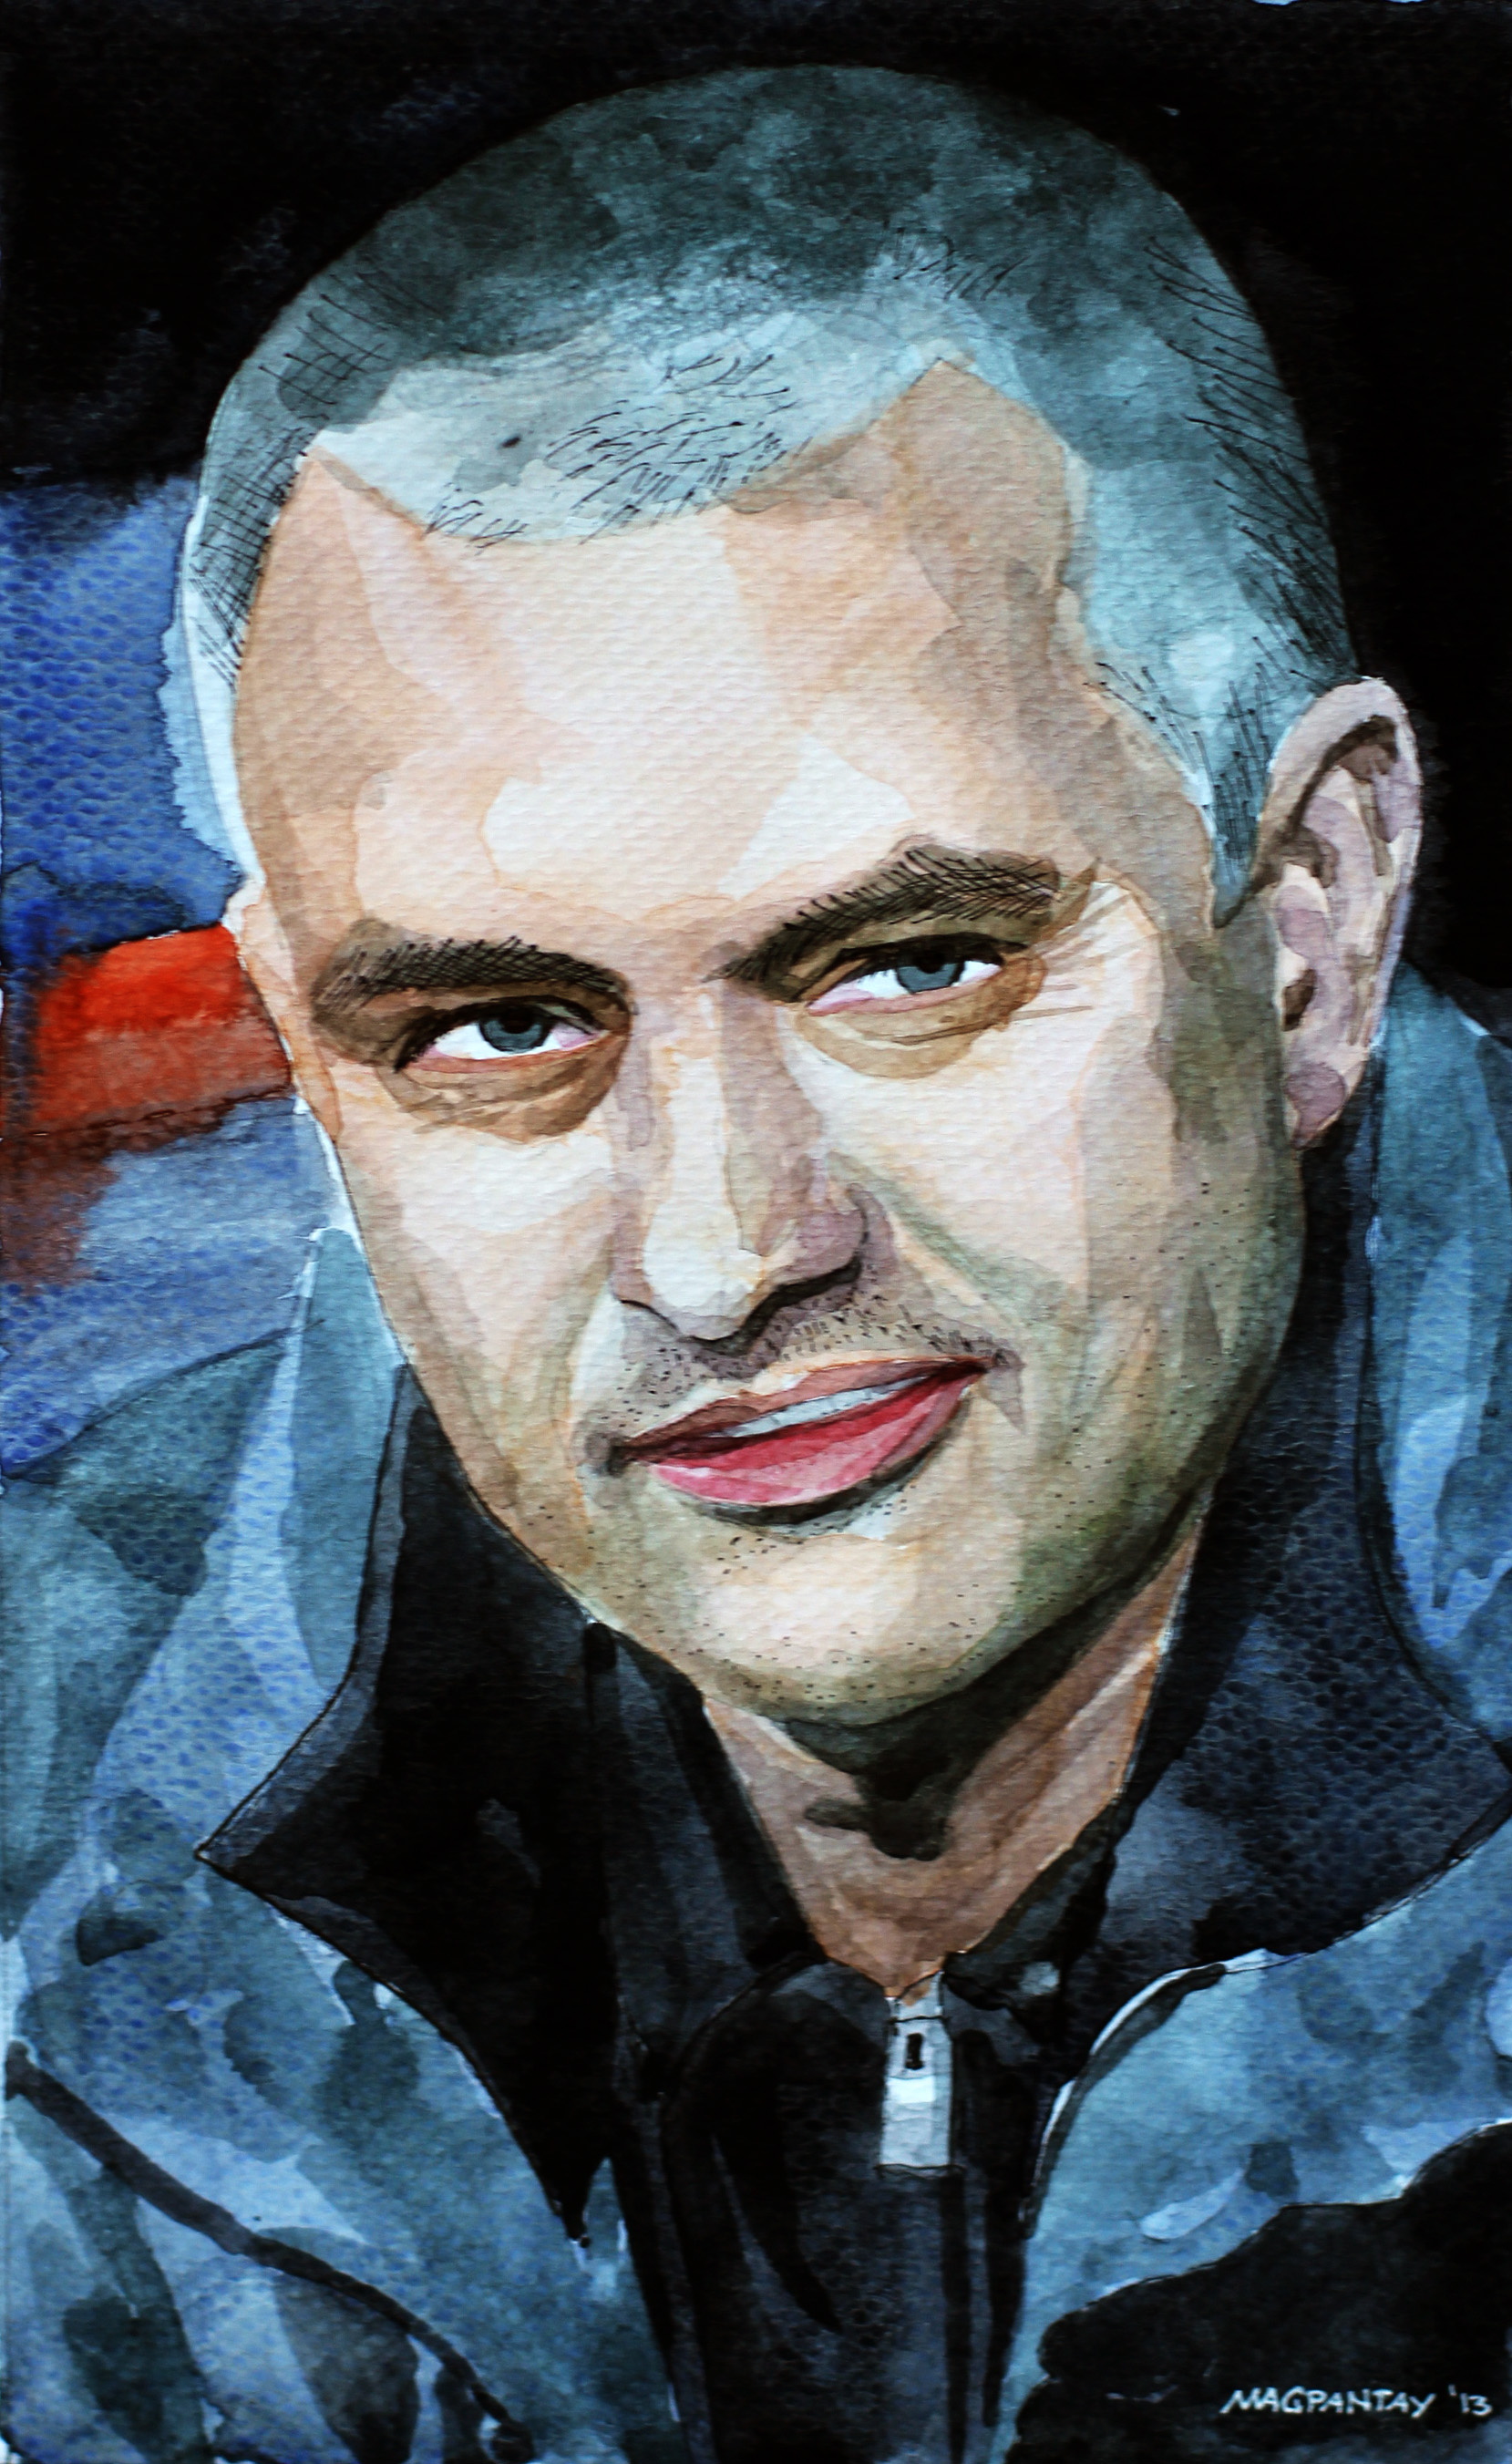 Unentschieden im Londoner Derby – Spurs imponieren mit kreativem Zentrum, Mourinhos Ass sticht